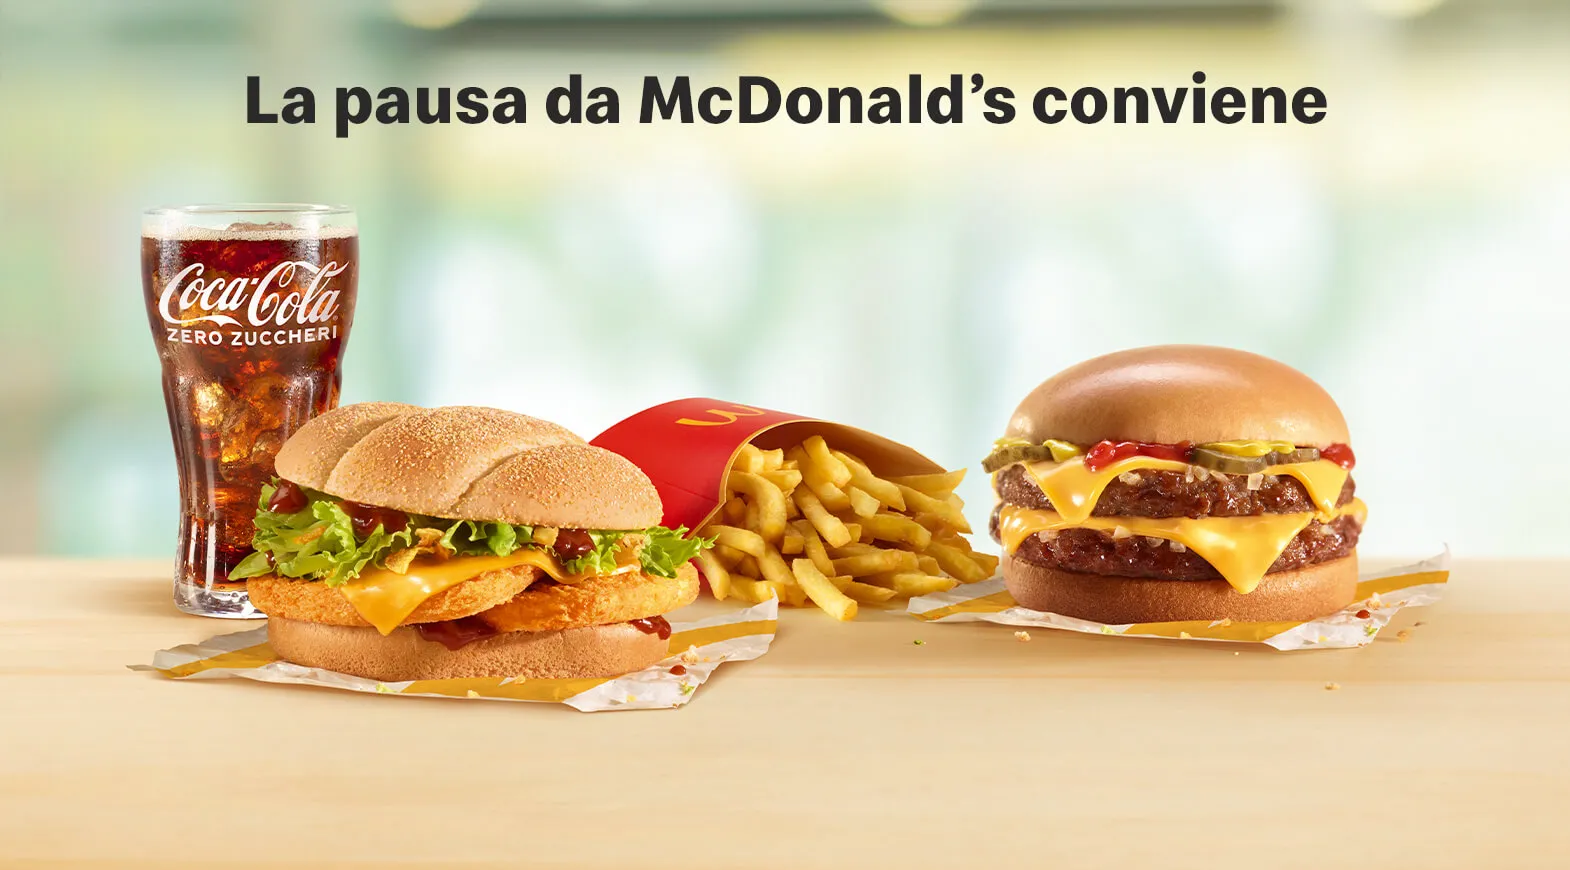 La pausa da McDonald’s conviene